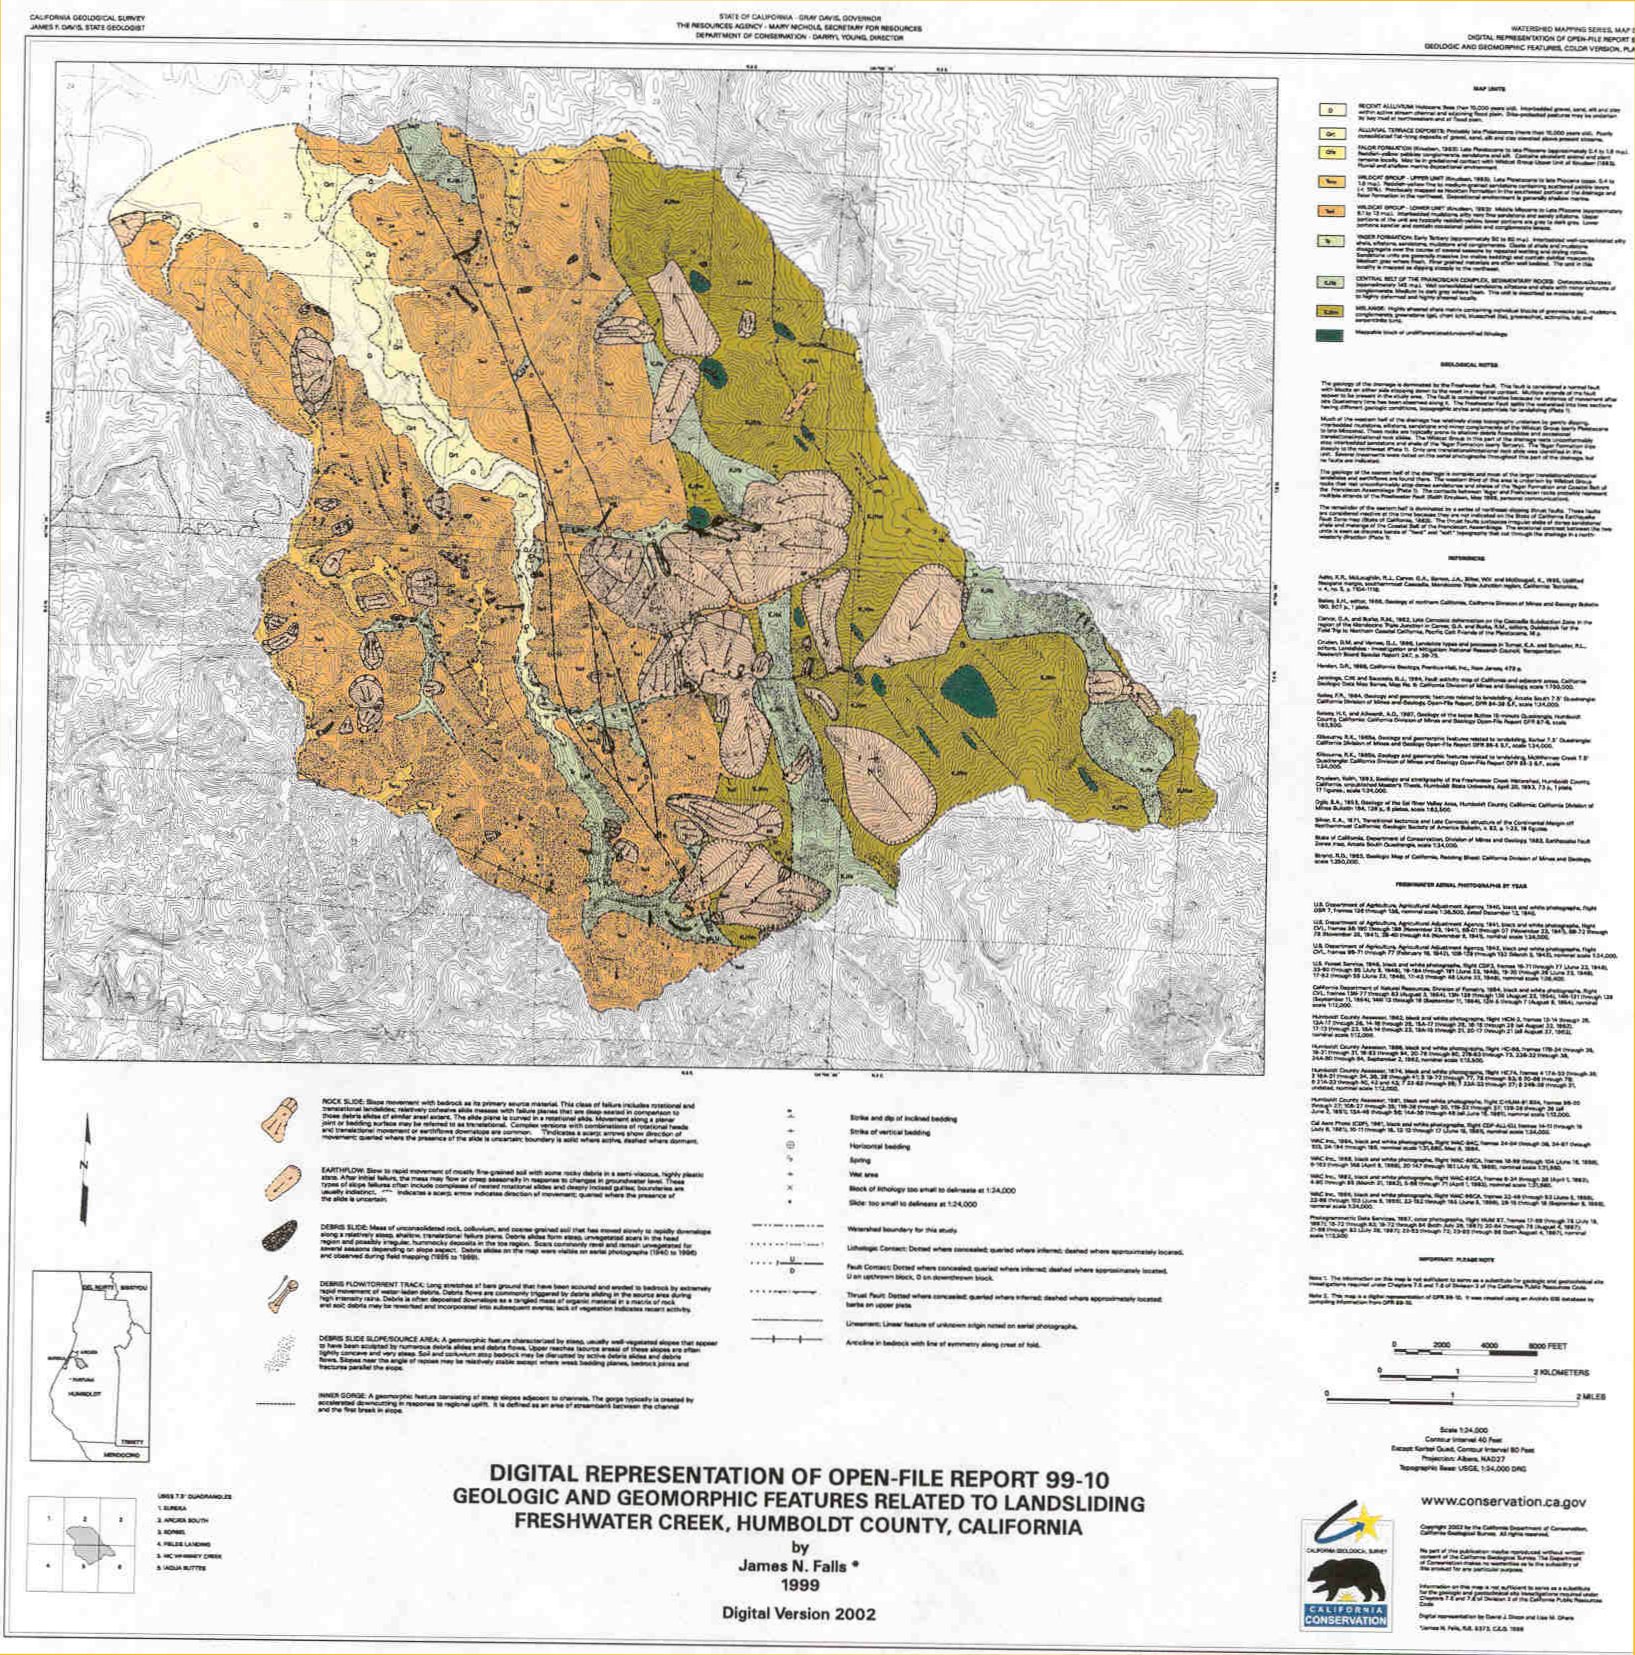 Thumbnail image: map of Freshwater Creek watershed